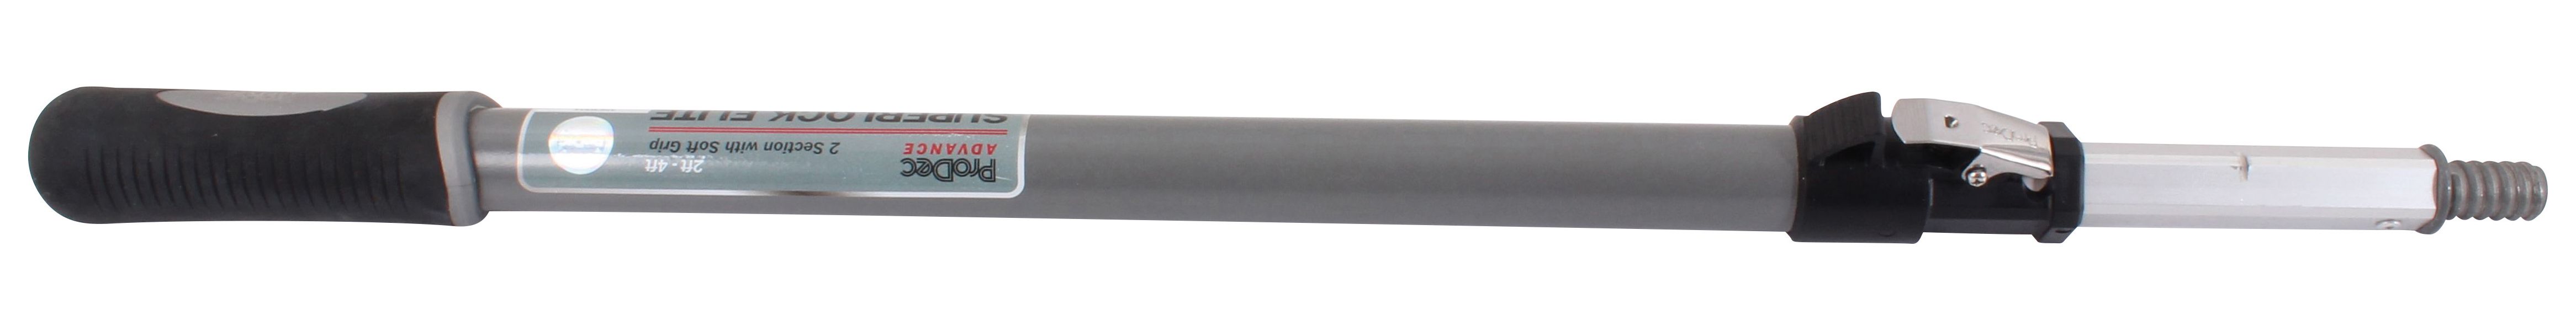 Image of ProDec Advance Super Lock Elite Extension Pole 4ft - 8ft